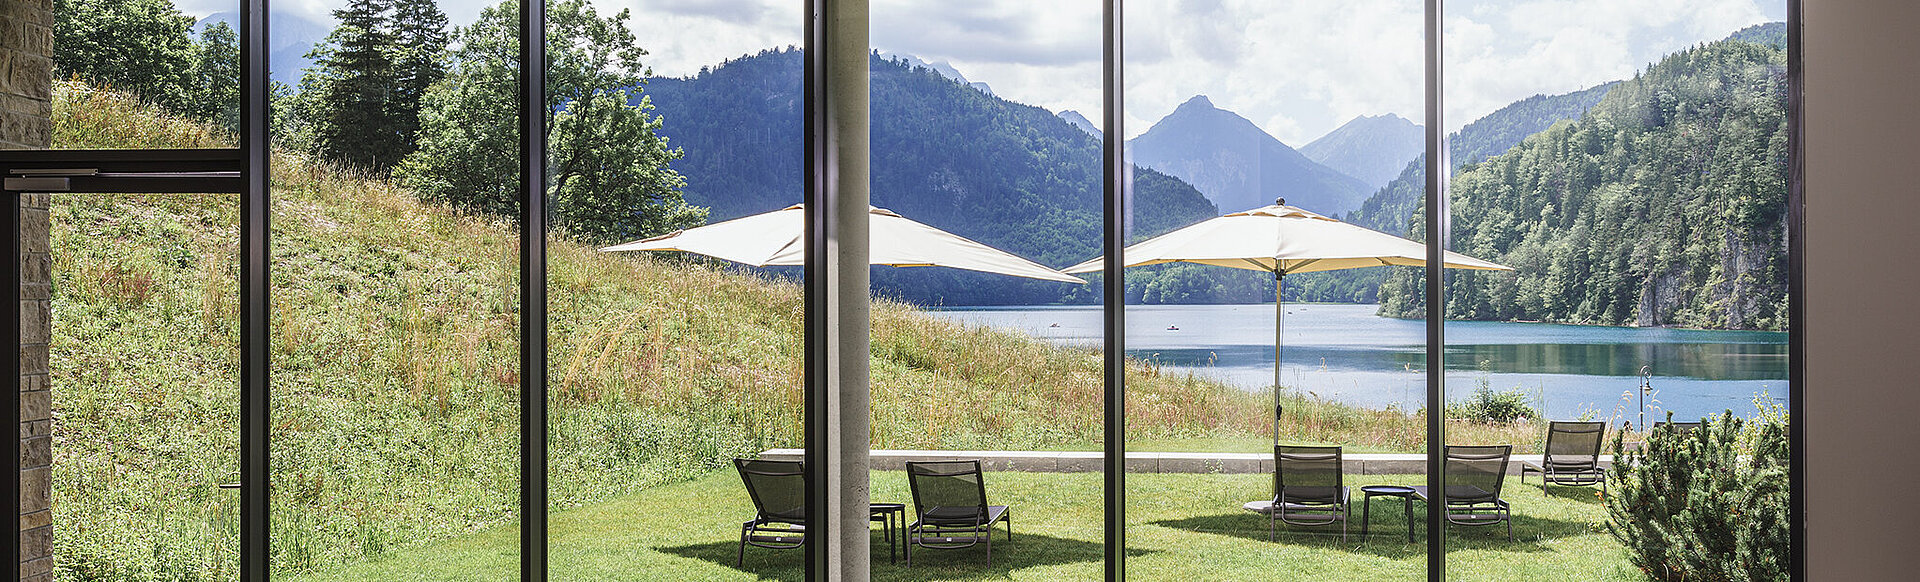 AMERON Neuschwanstein Alpsee Resort & Spa Ausblick auf den See Wellness